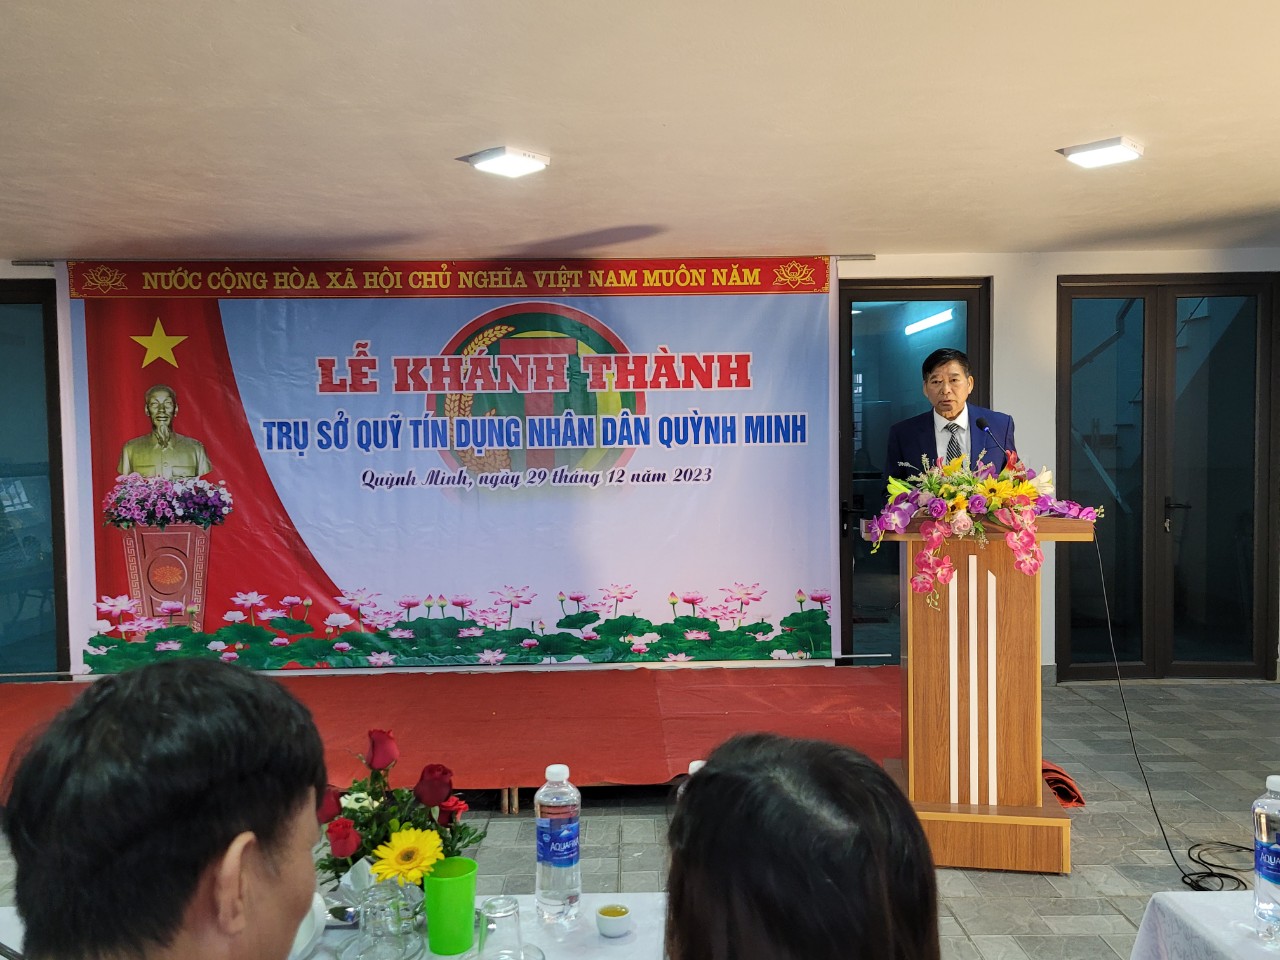 Lễ cắt băng khánh thành  Trụ sở Quỹ tín dụng nhân dân Quỳnh Minh